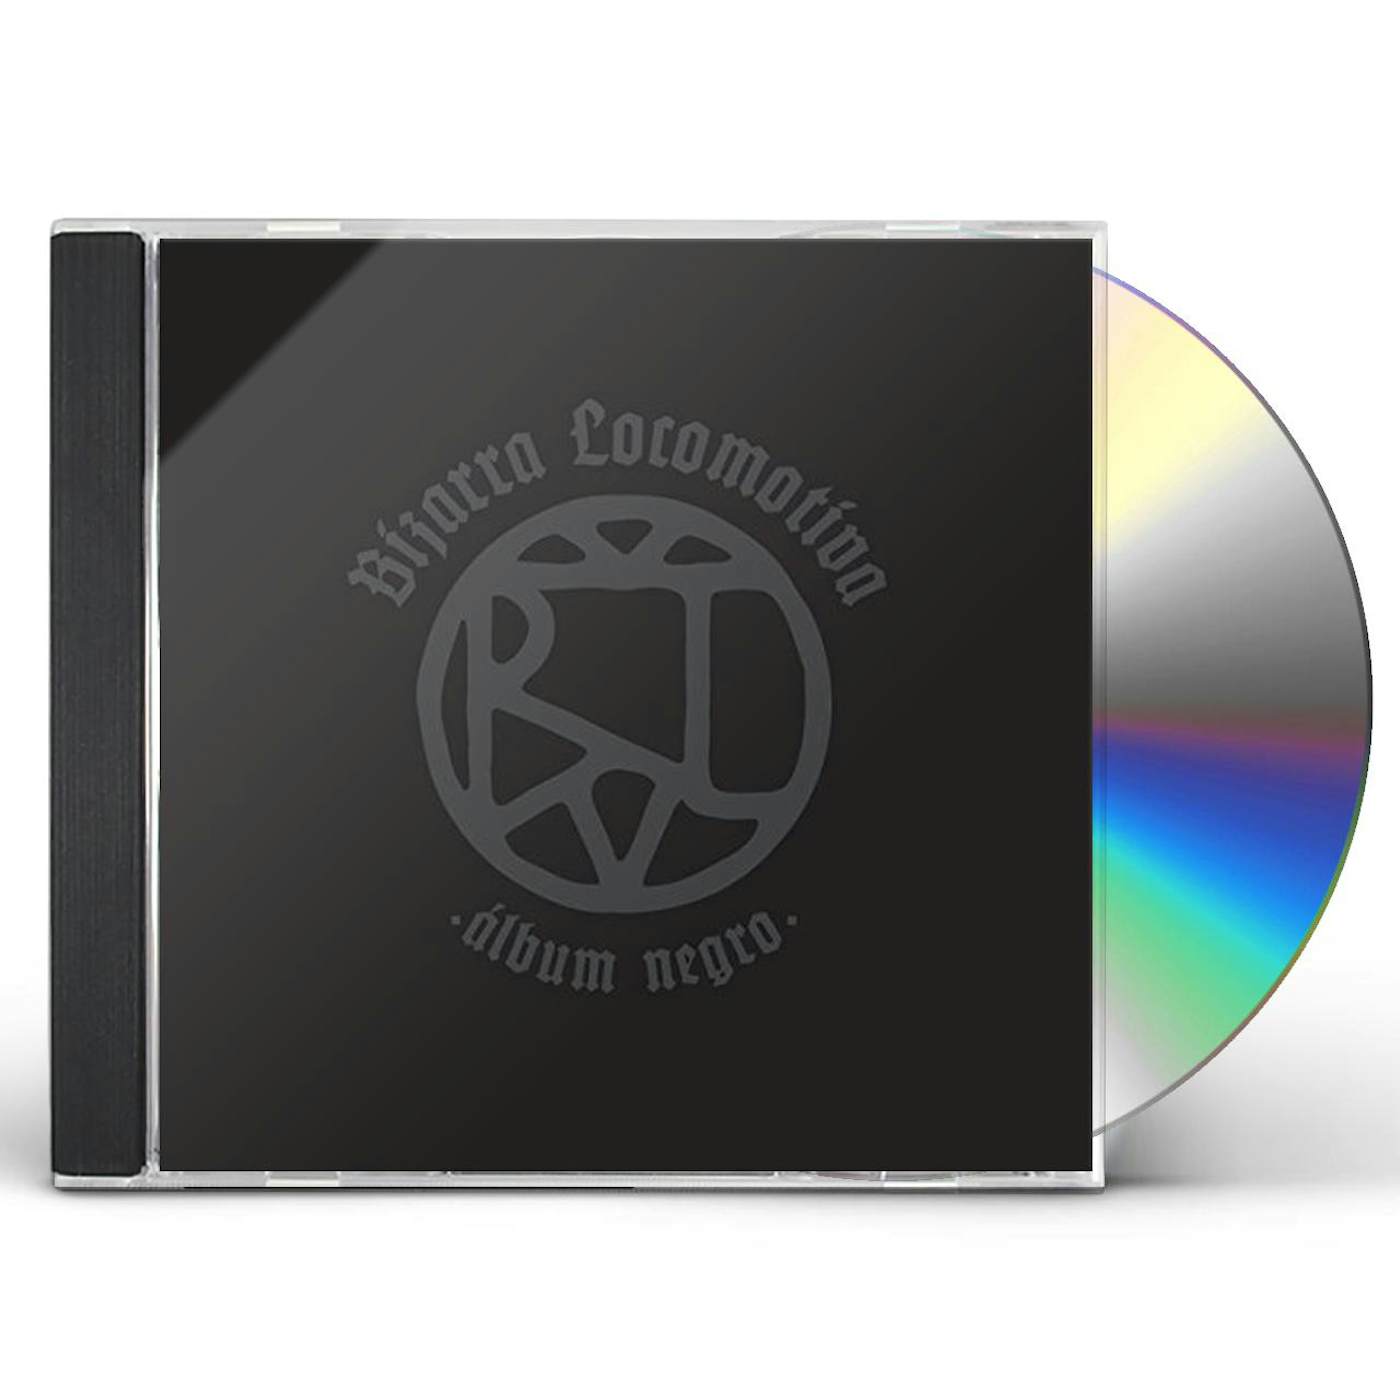 Bizarra Locomotiva ALBUM NEGRO / BLACK ALBUM CD